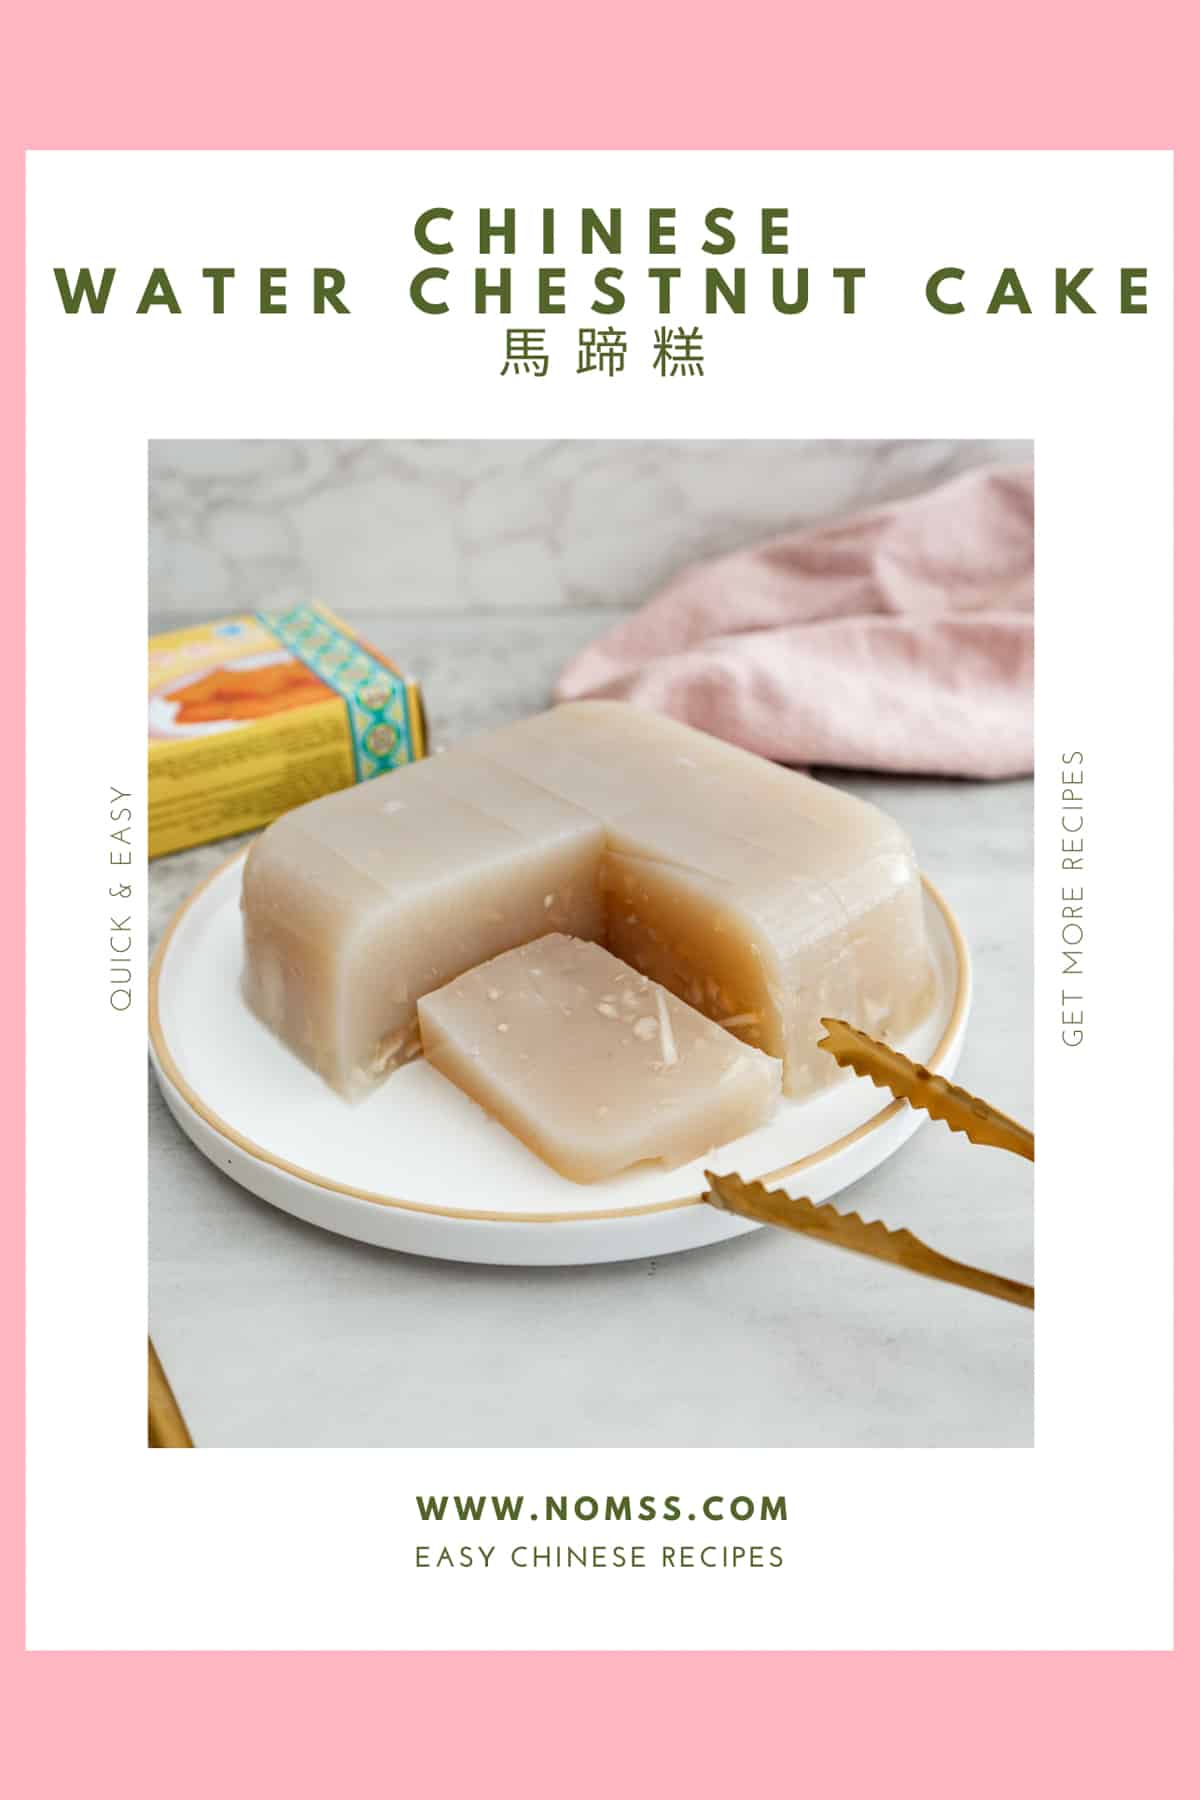 Best Water Chestnut Cake 馬蹄糕